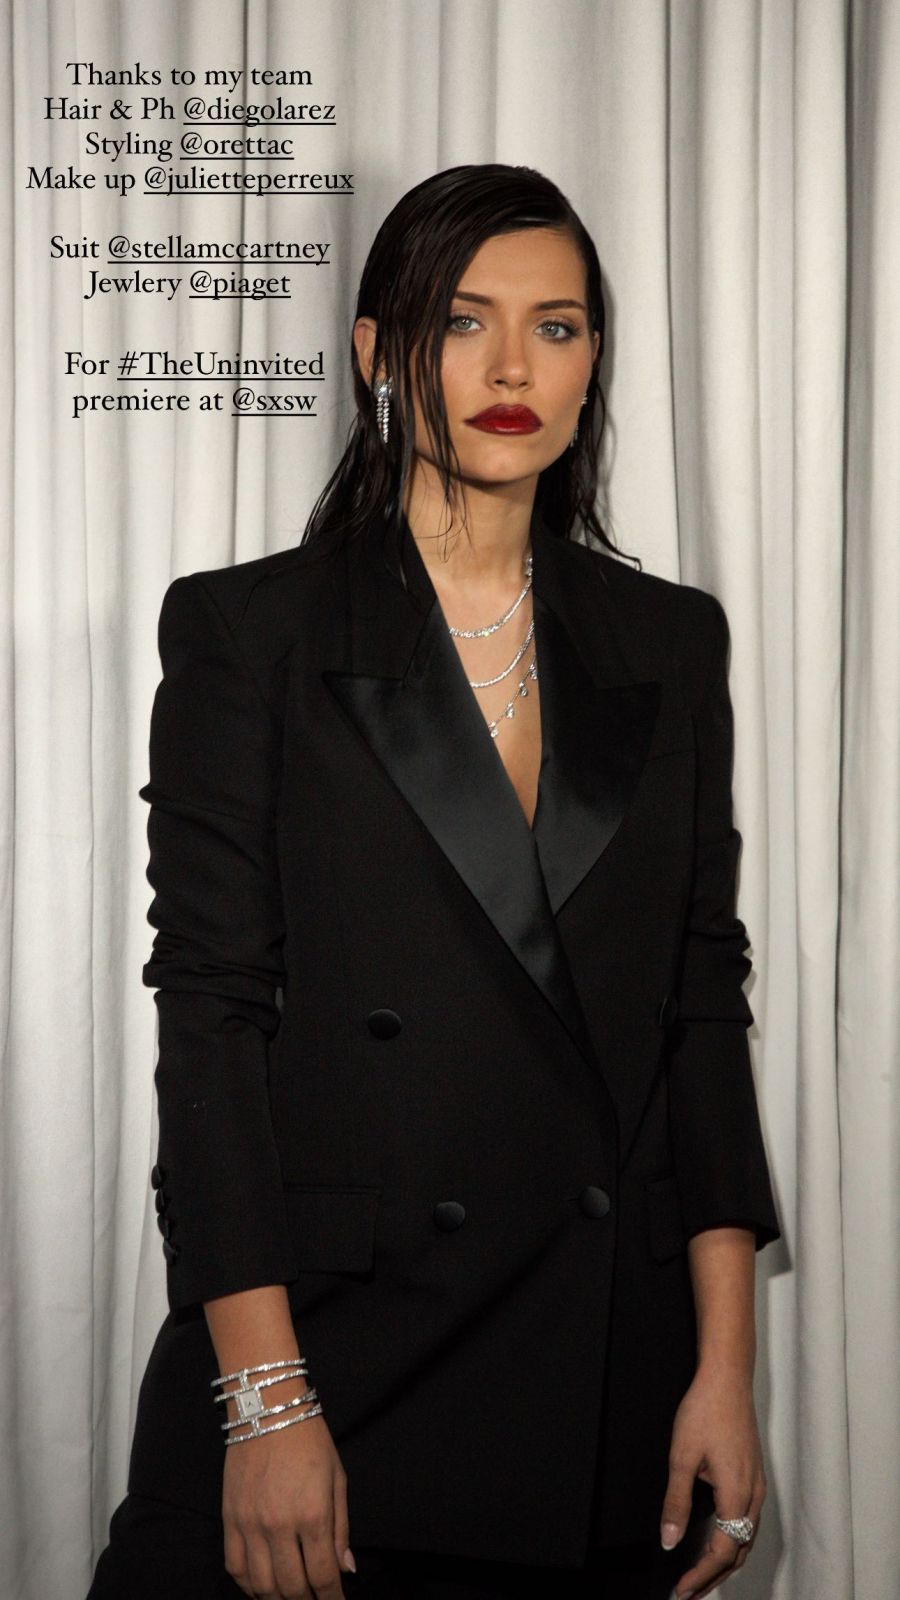 El espectacular look total black de Eva Dominici para el avant premiere de su película